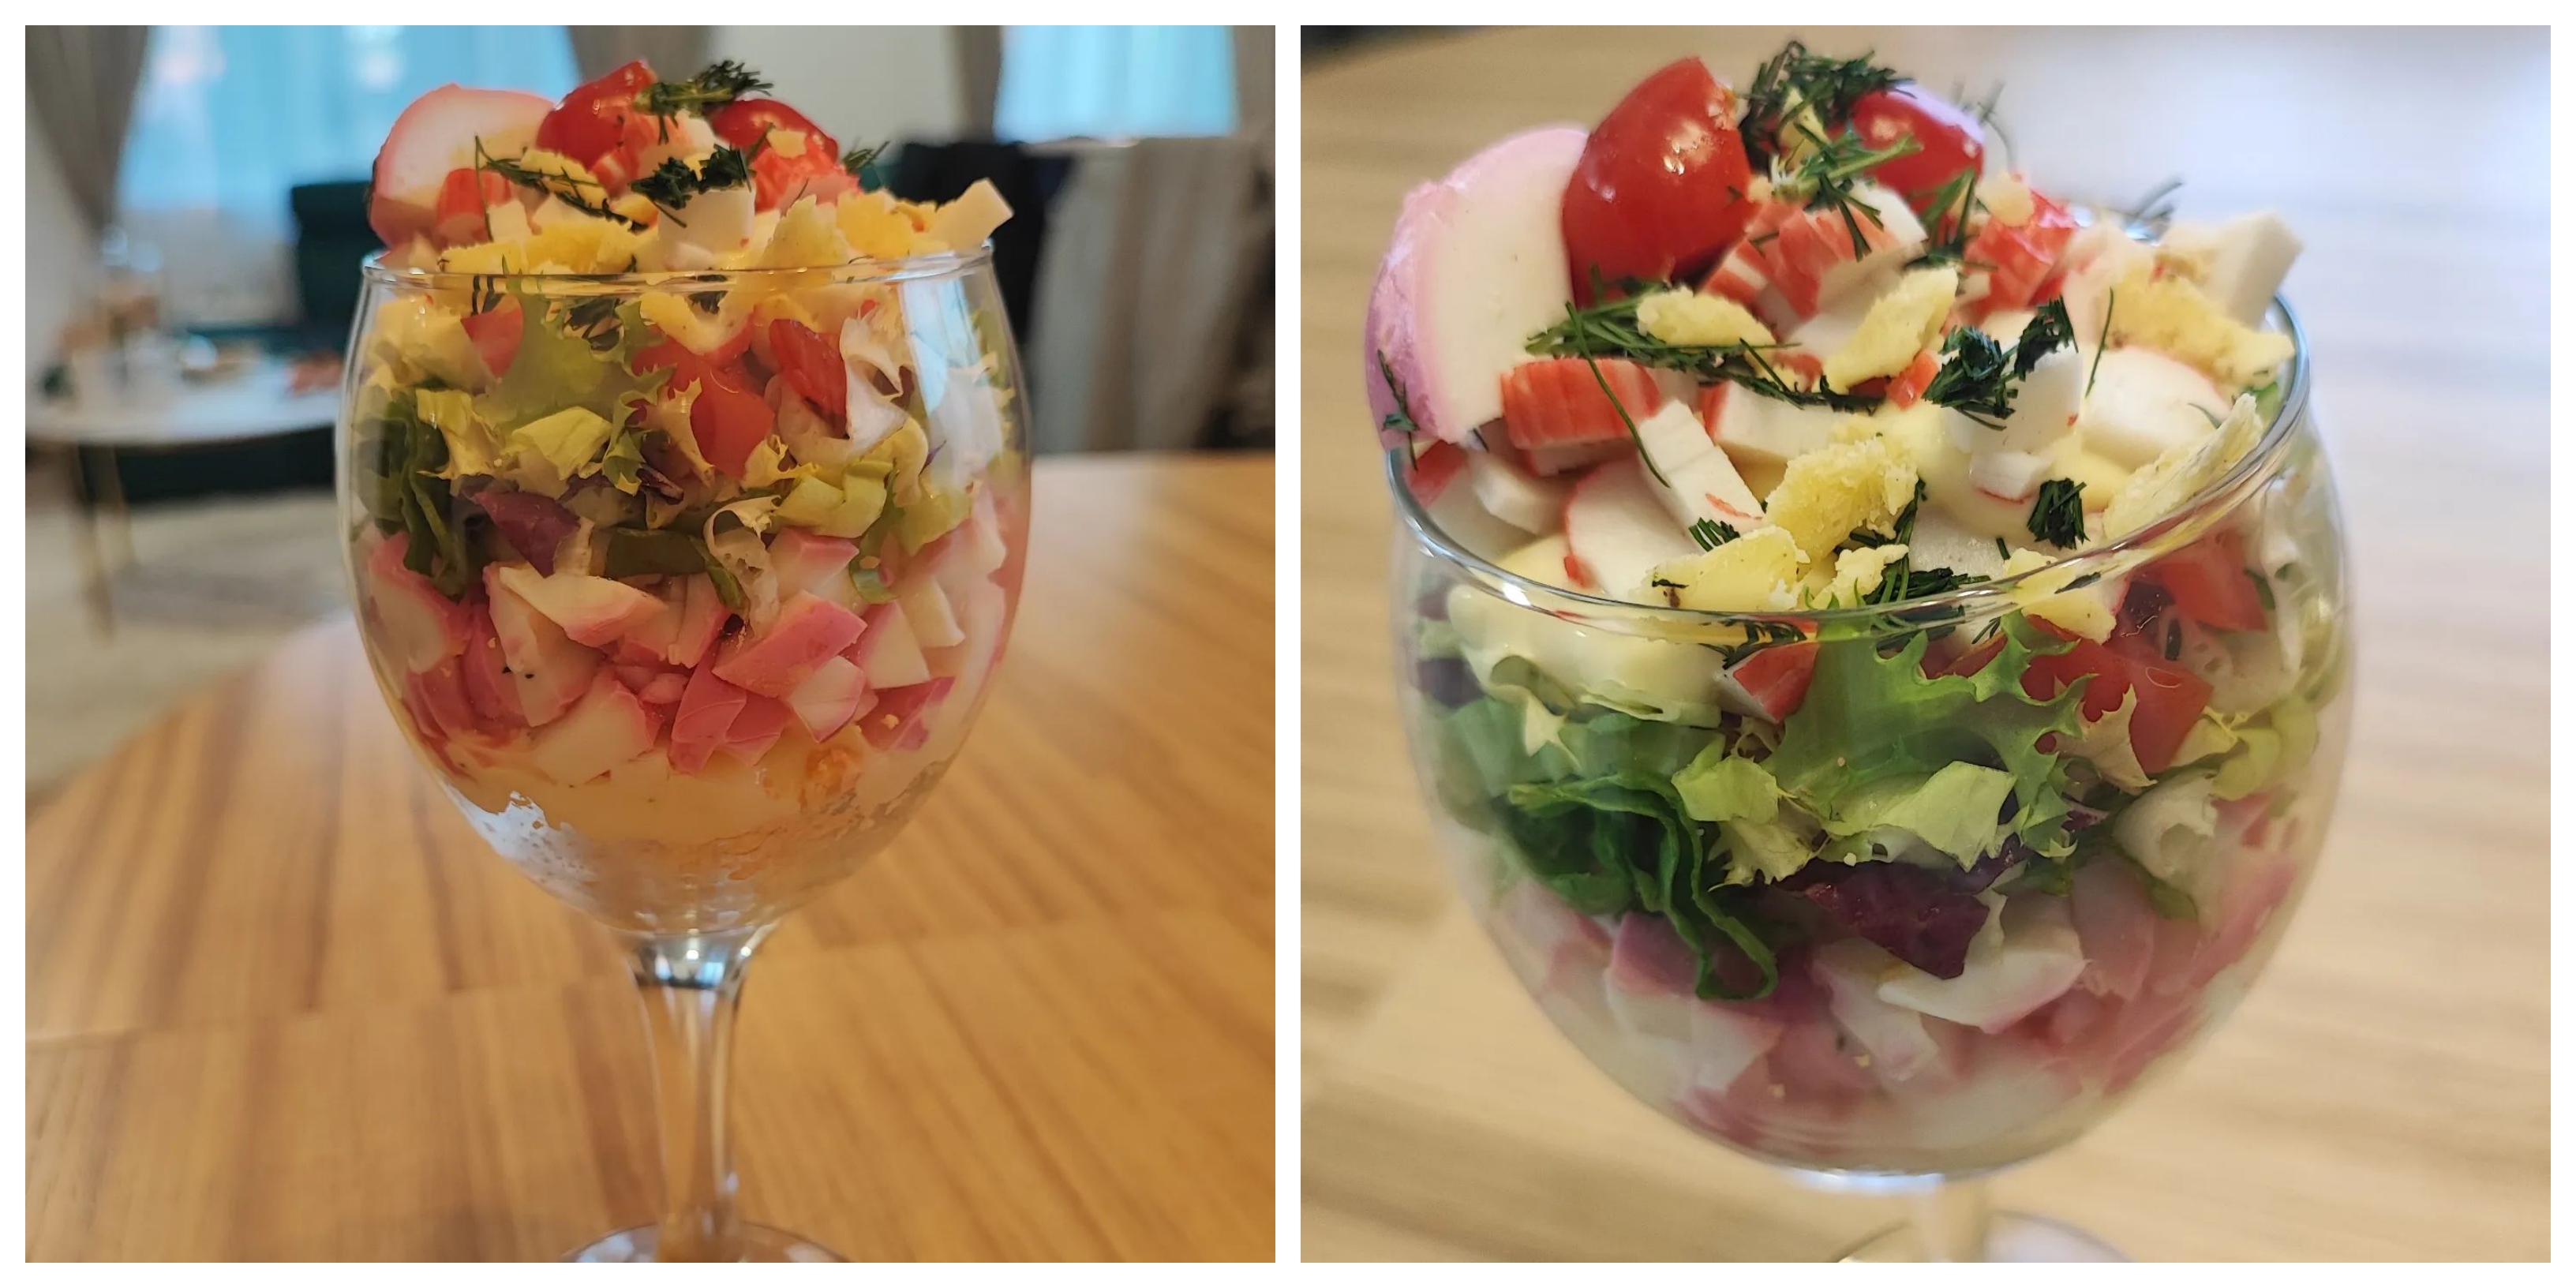 Velykinės salotos vienam: pagal kiekvieno skonį